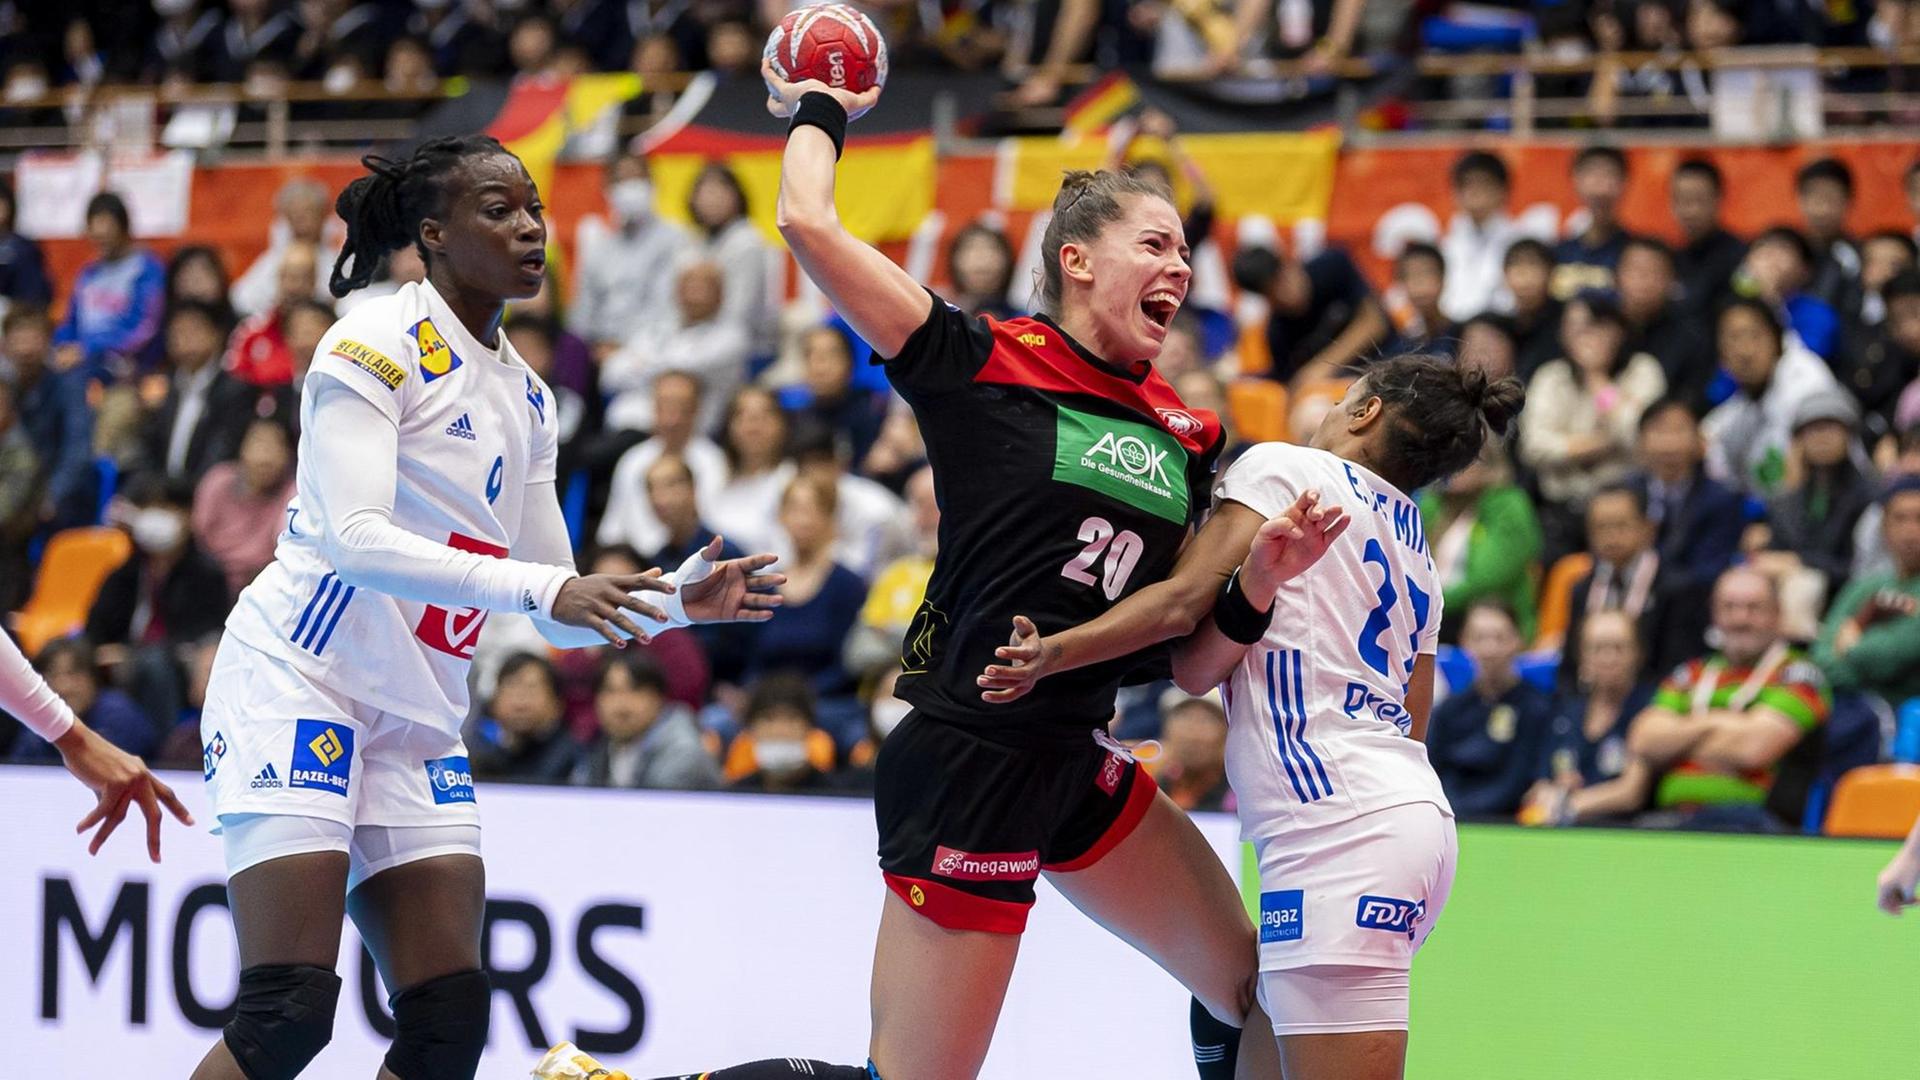 Die deutsche Handball-Nationalspielerin Emily Bölk versucht den ball zu werfen. Die französische Nationalspielerin Estelle Nze Minko versucht sie daran zu hindern.